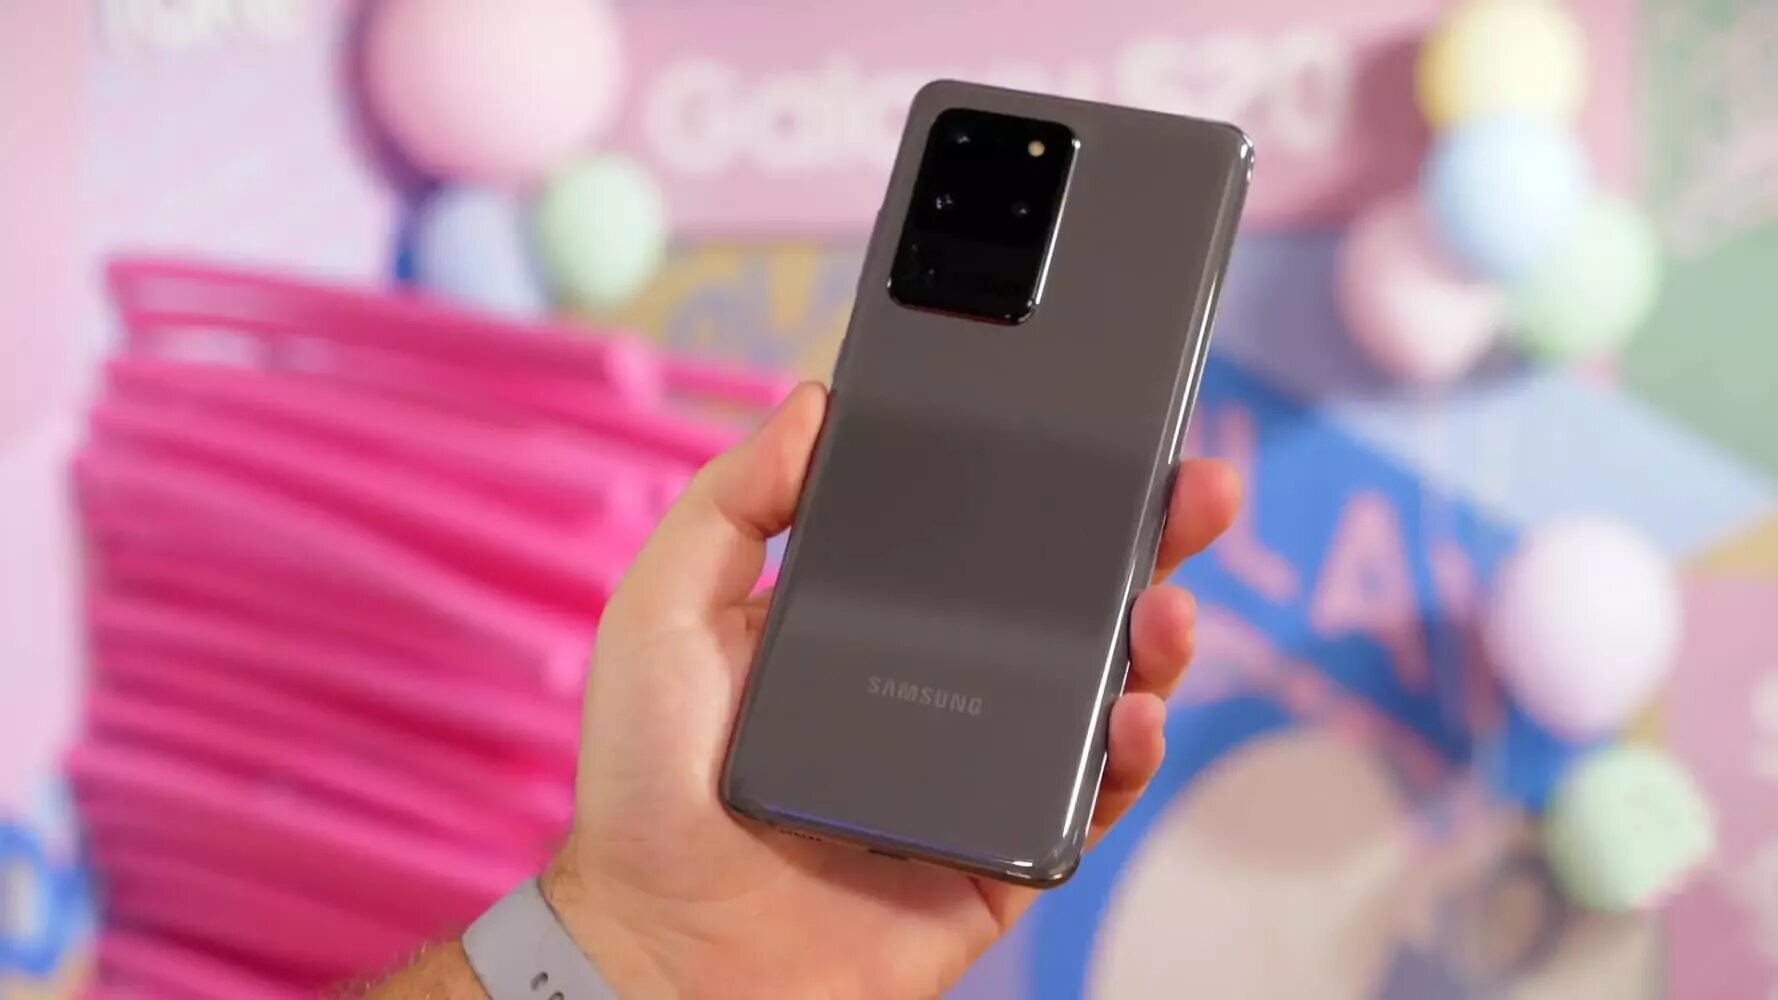 Фишки самсунг. Самсунг последнего поколения. Телефон самсунг нового поколения. Фишки Samsung Galaxy s20. Картреч 2020 самсунг.